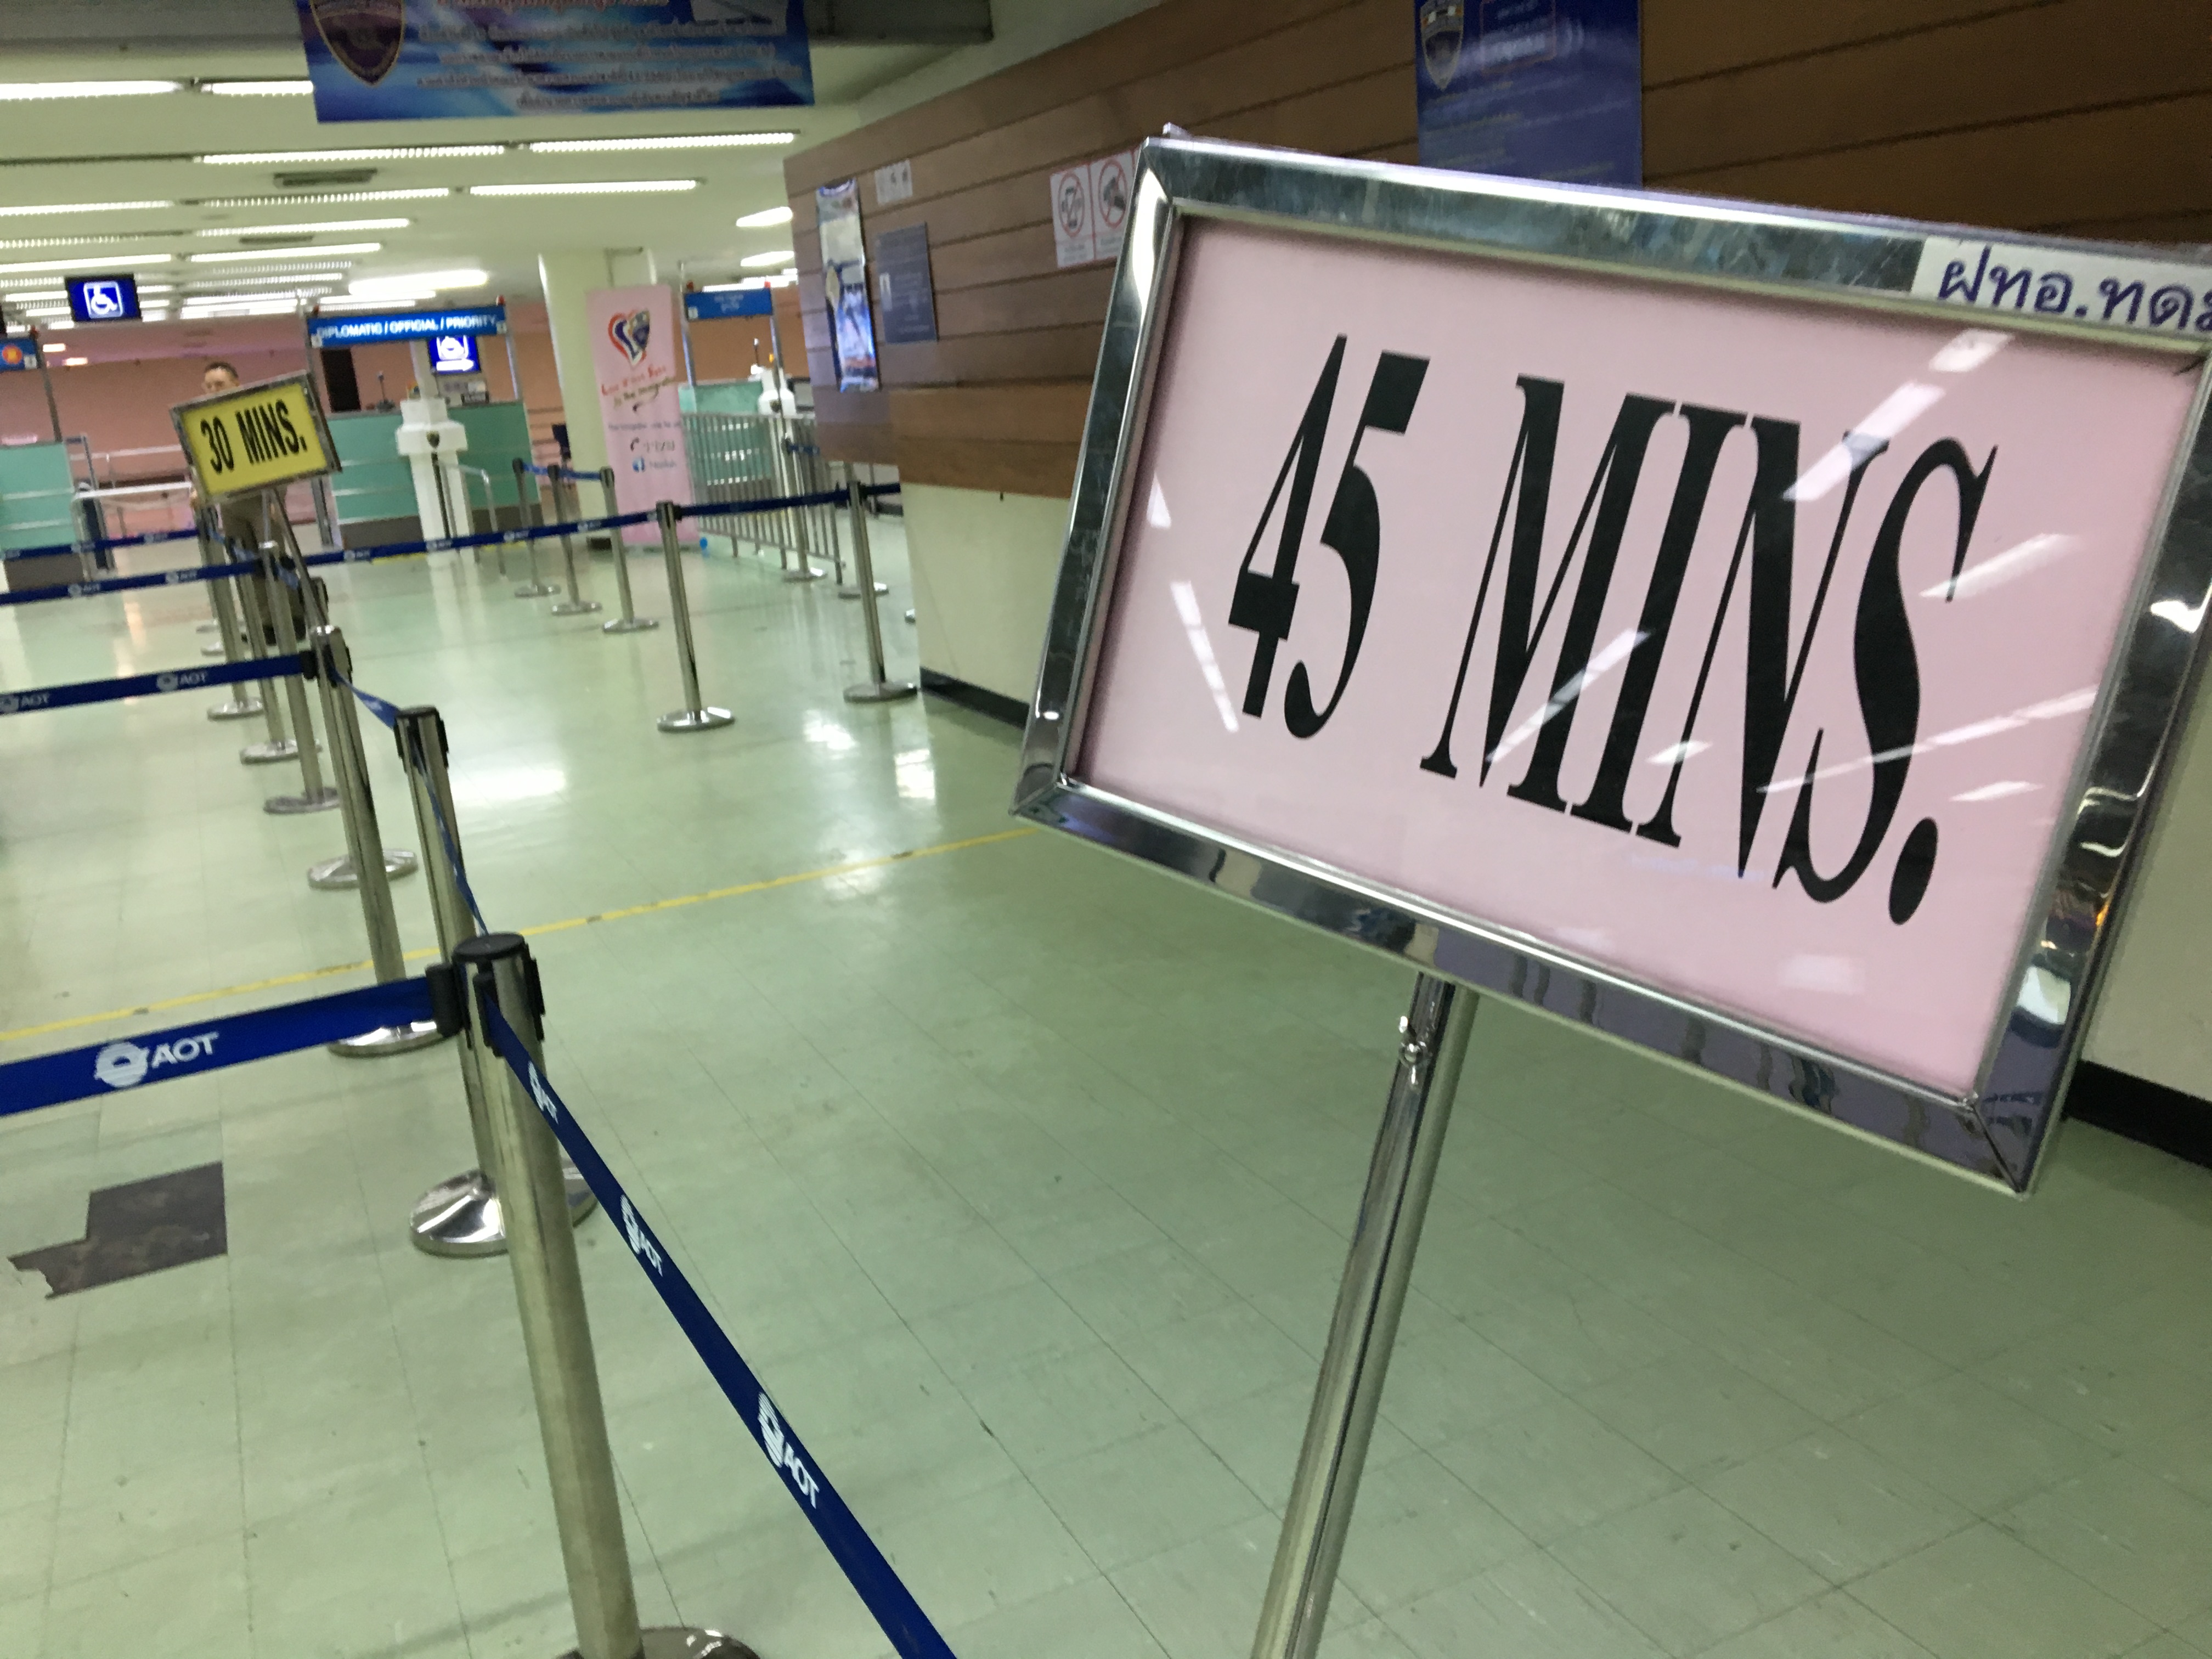 ドンムアン空港 チェックイン 時間,ドンムアン空港 出国審査 混雑